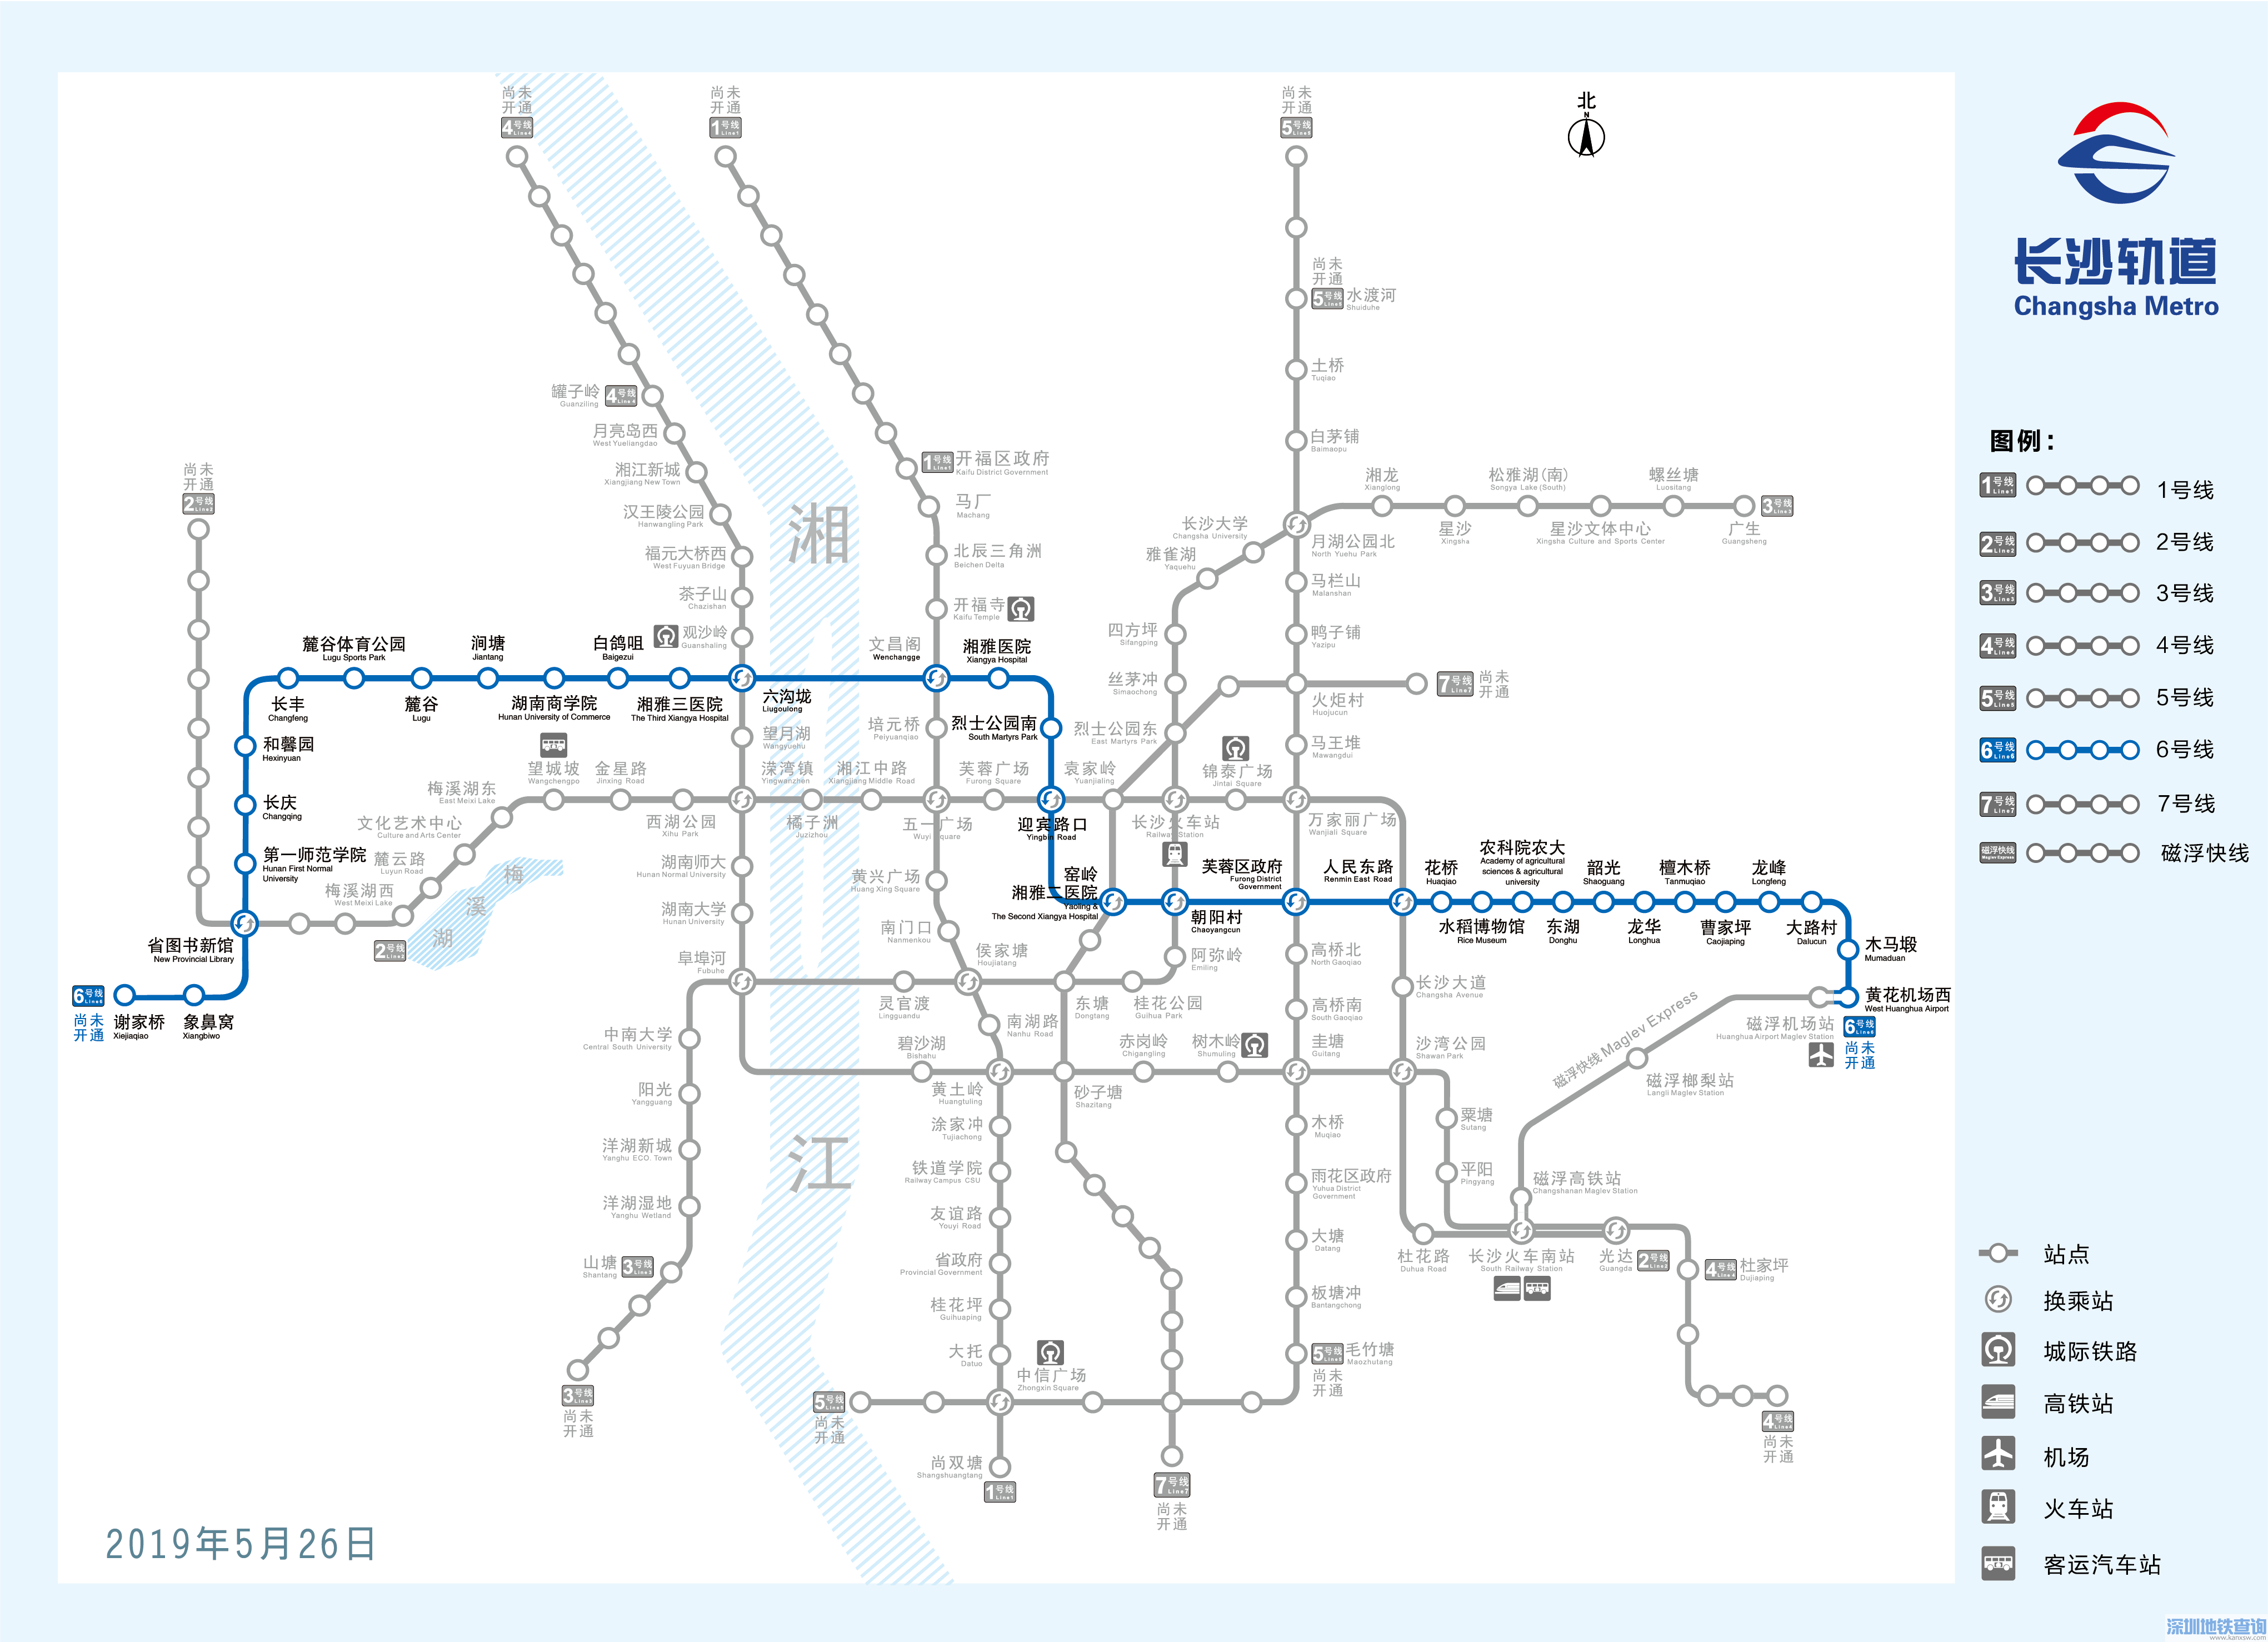 长沙地铁6号线东段和西段主体近日动工开建 附规划线路图